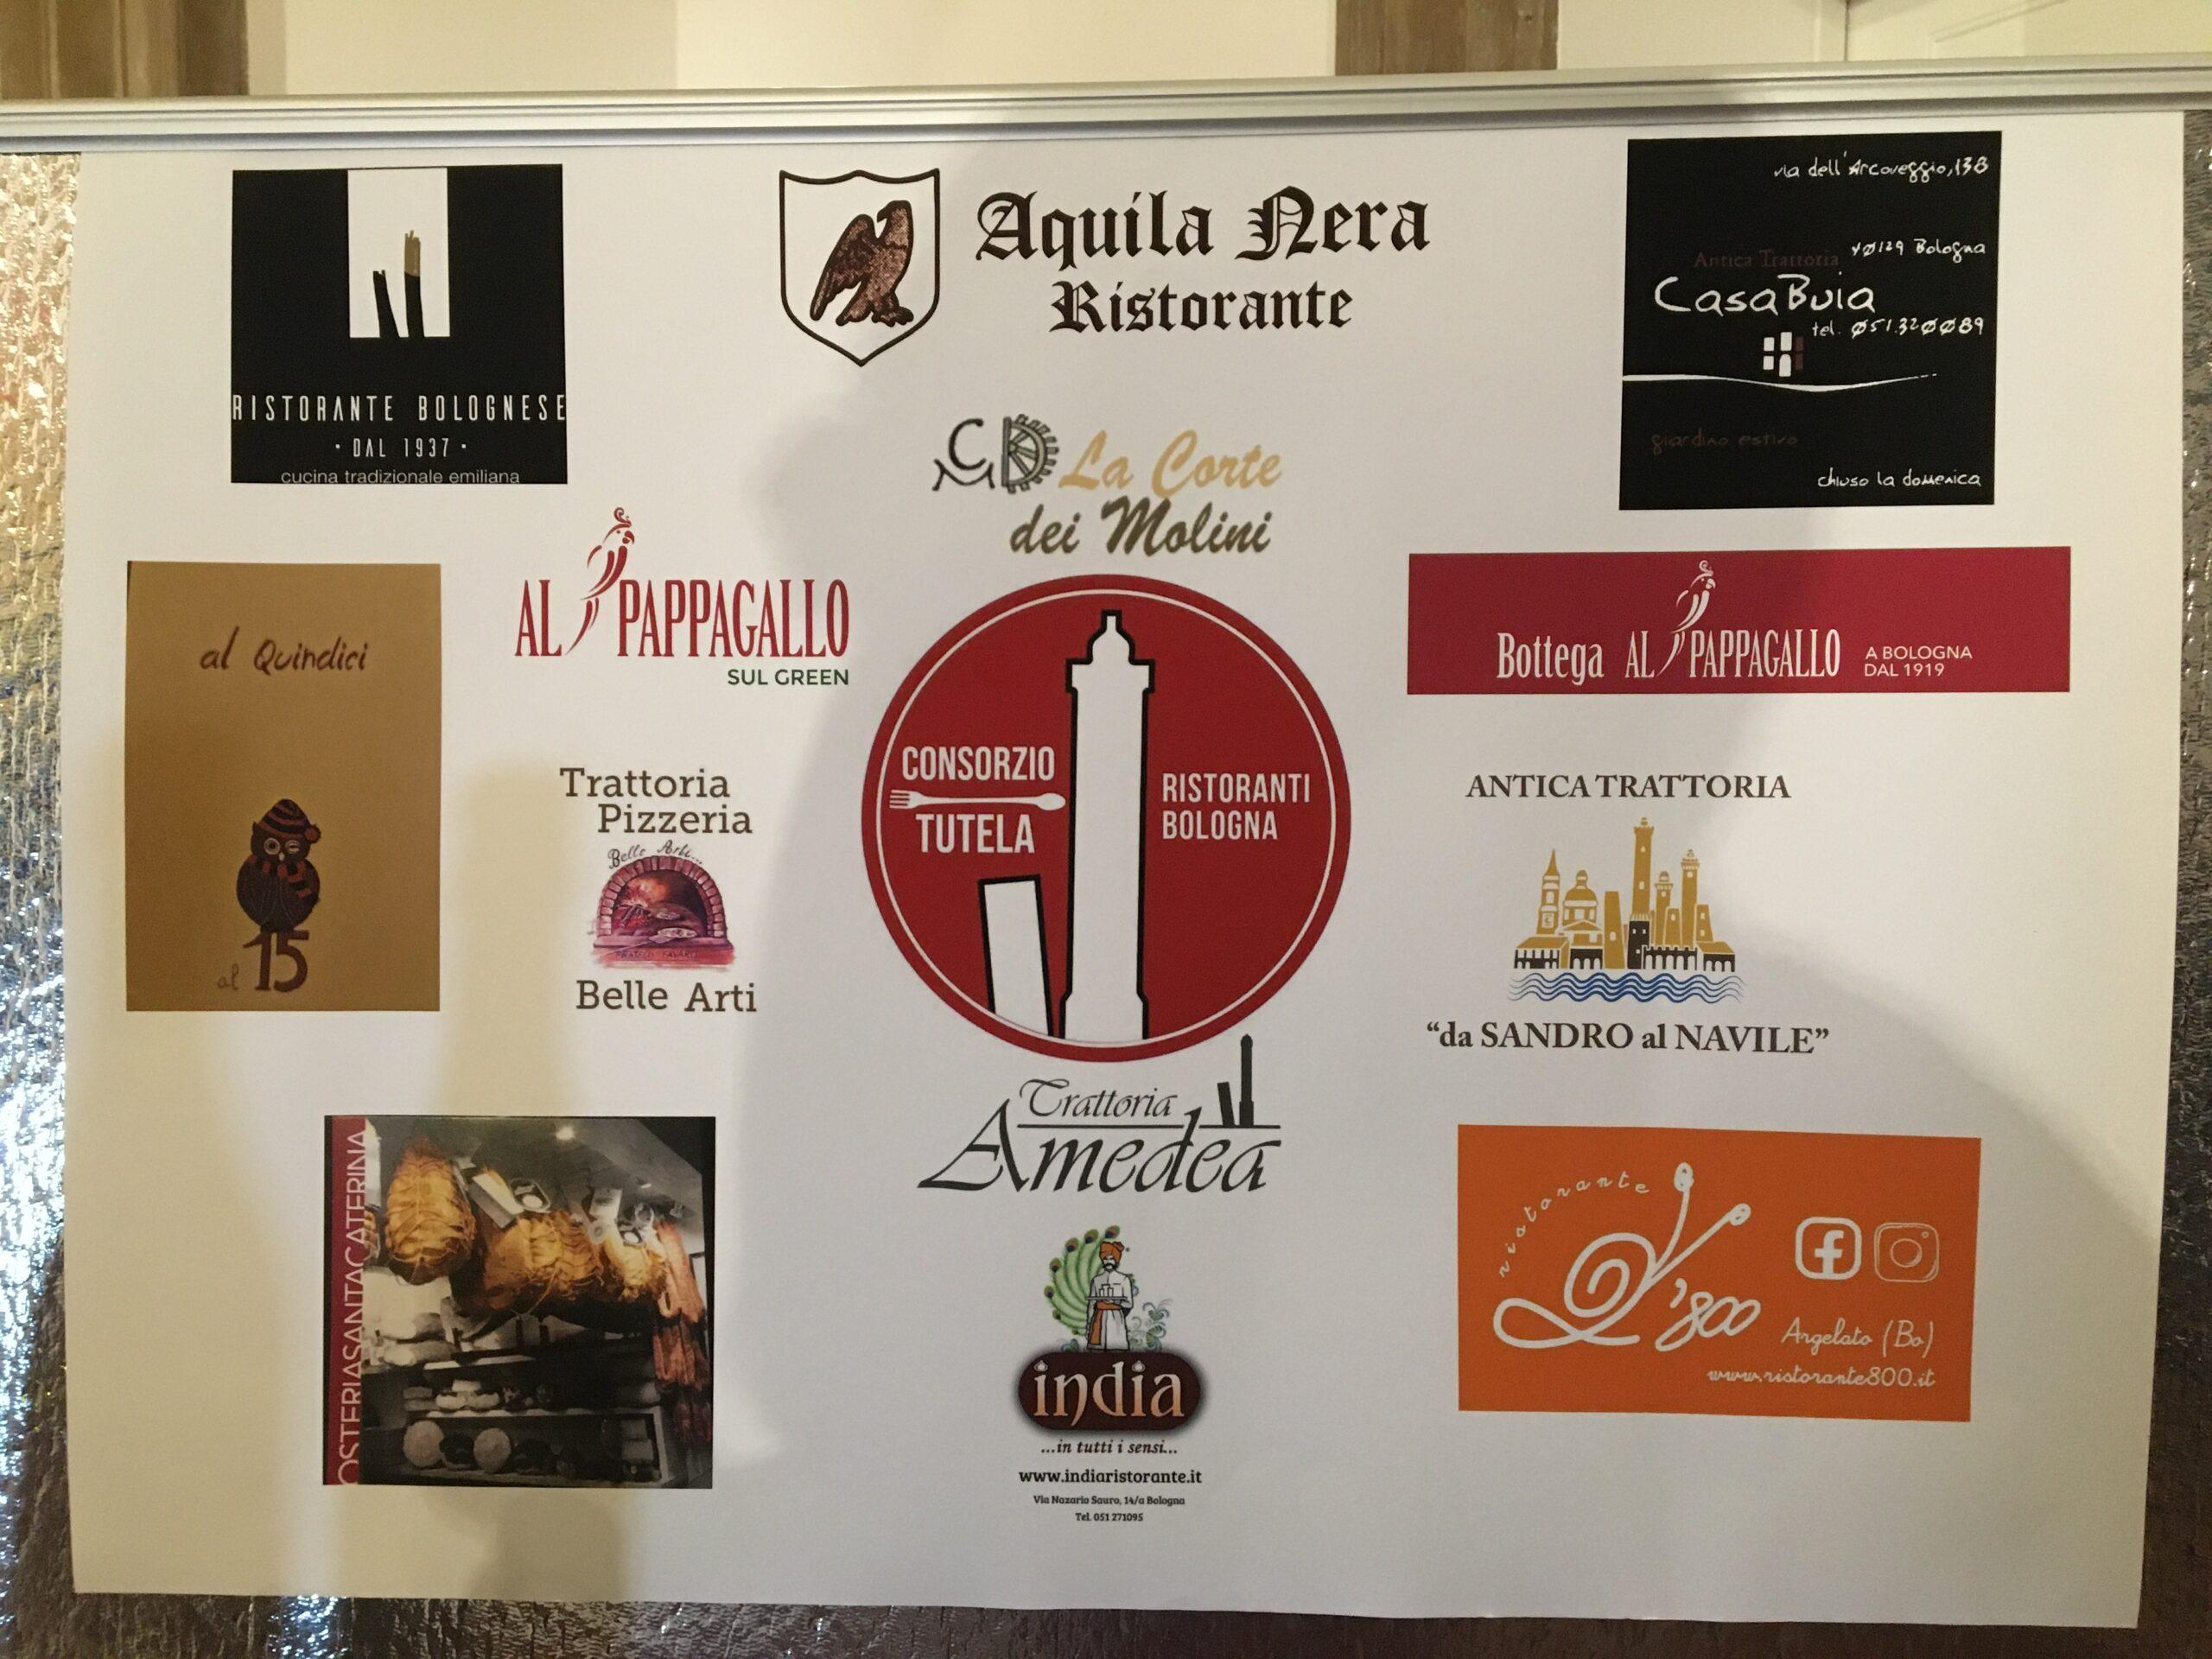 Consorzio tutela ristoranti Bologna